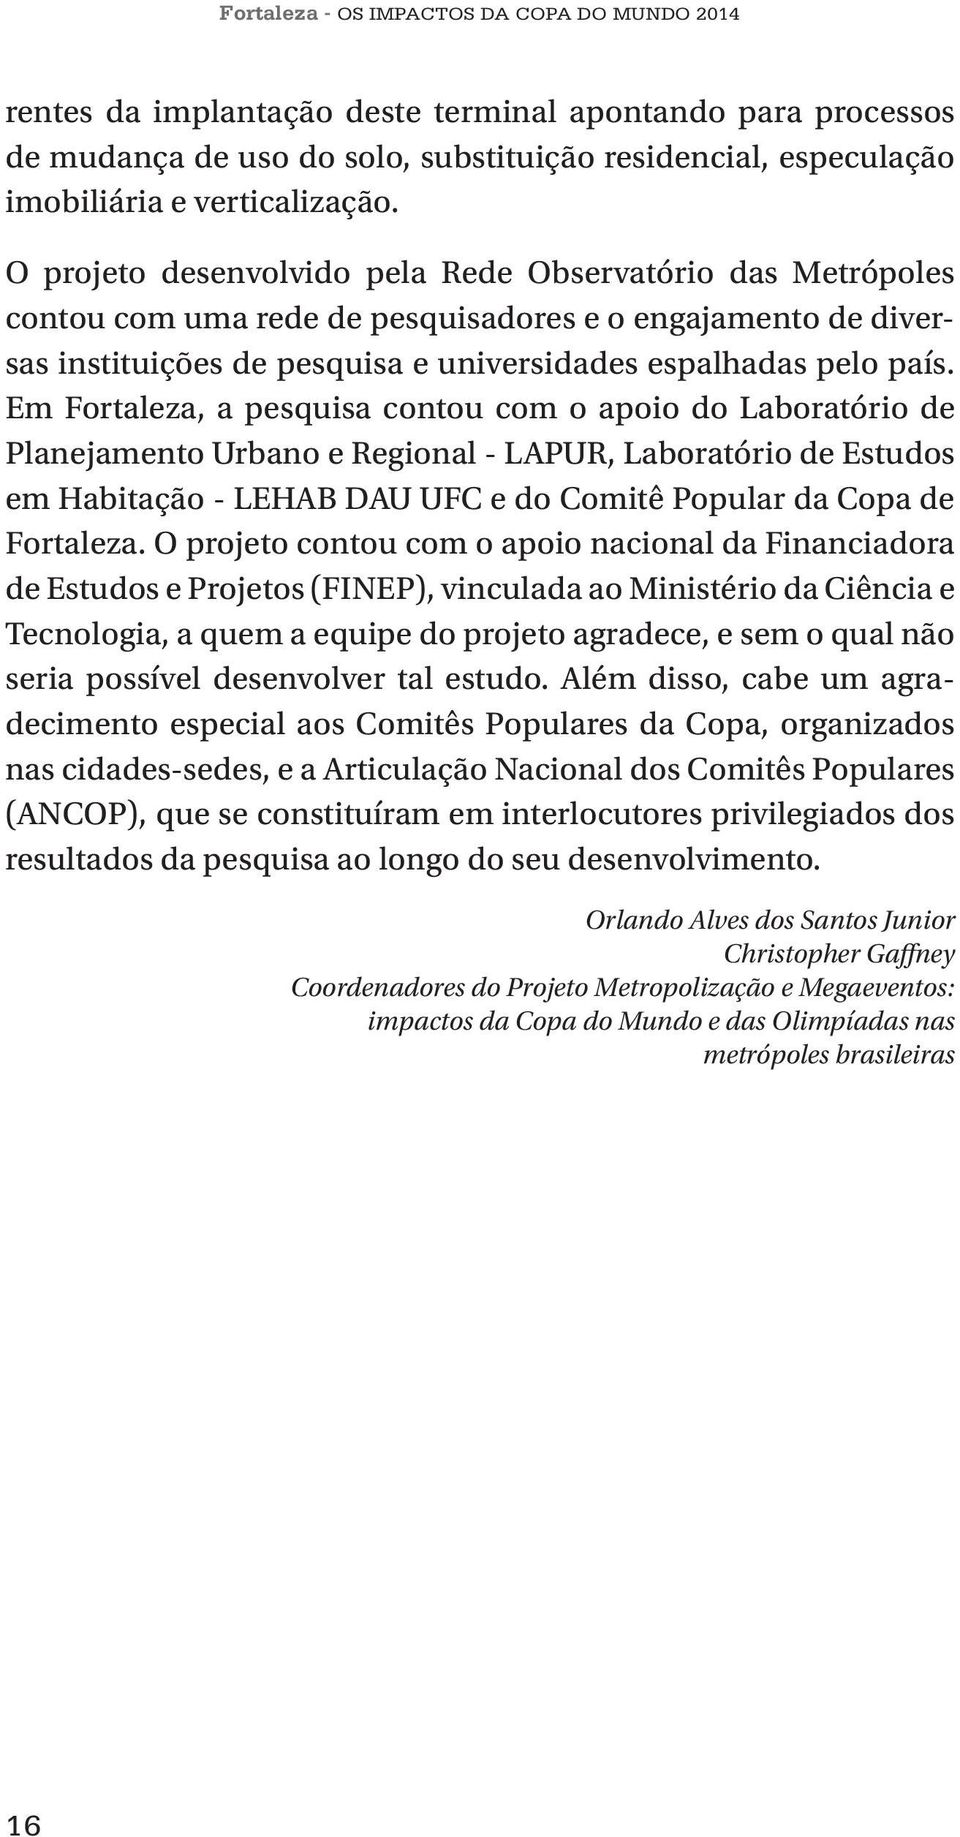 Em Fortaleza, a pesquisa contou com o apoio do Laboratório de Planejamento Urbano e Regional - LAPUR, Laboratório de Estudos em Habitação - LEHAB DAU UFC e do Comitê Popular da Copa de Fortaleza.